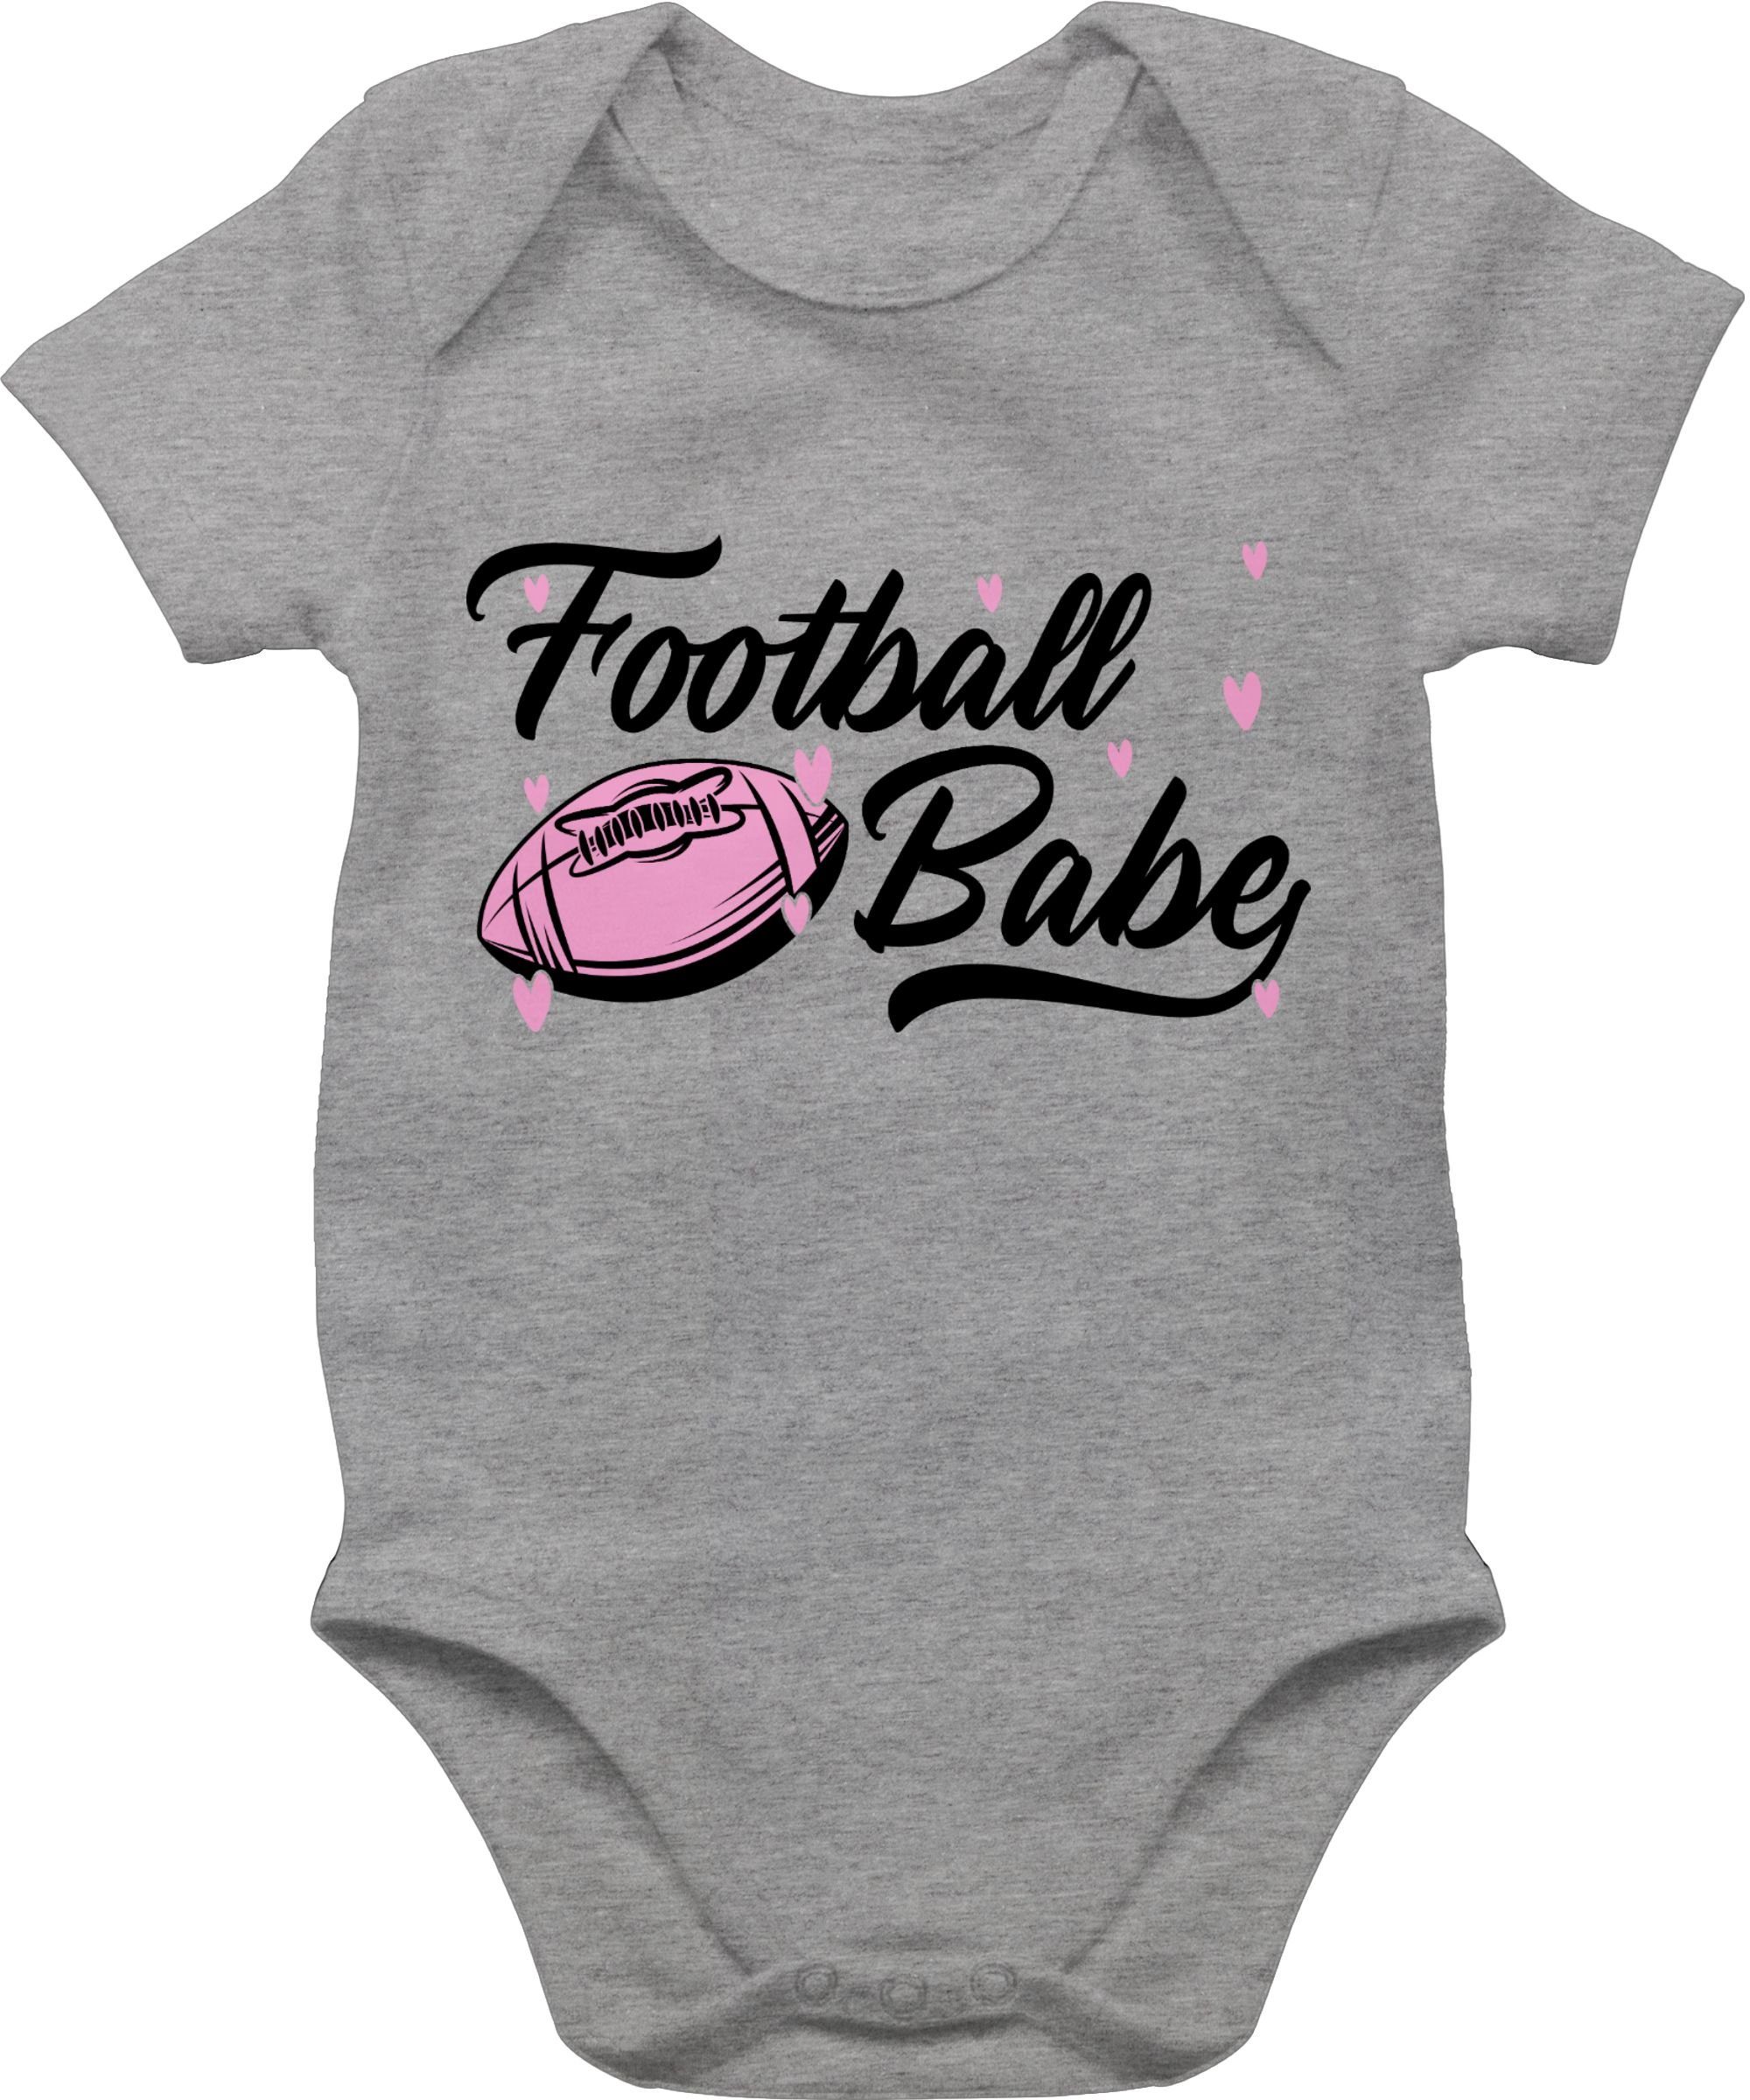 Shirtracer Shirtbody Football Babe rosa/schwarz Sport & Bewegung Baby 2 Grau meliert